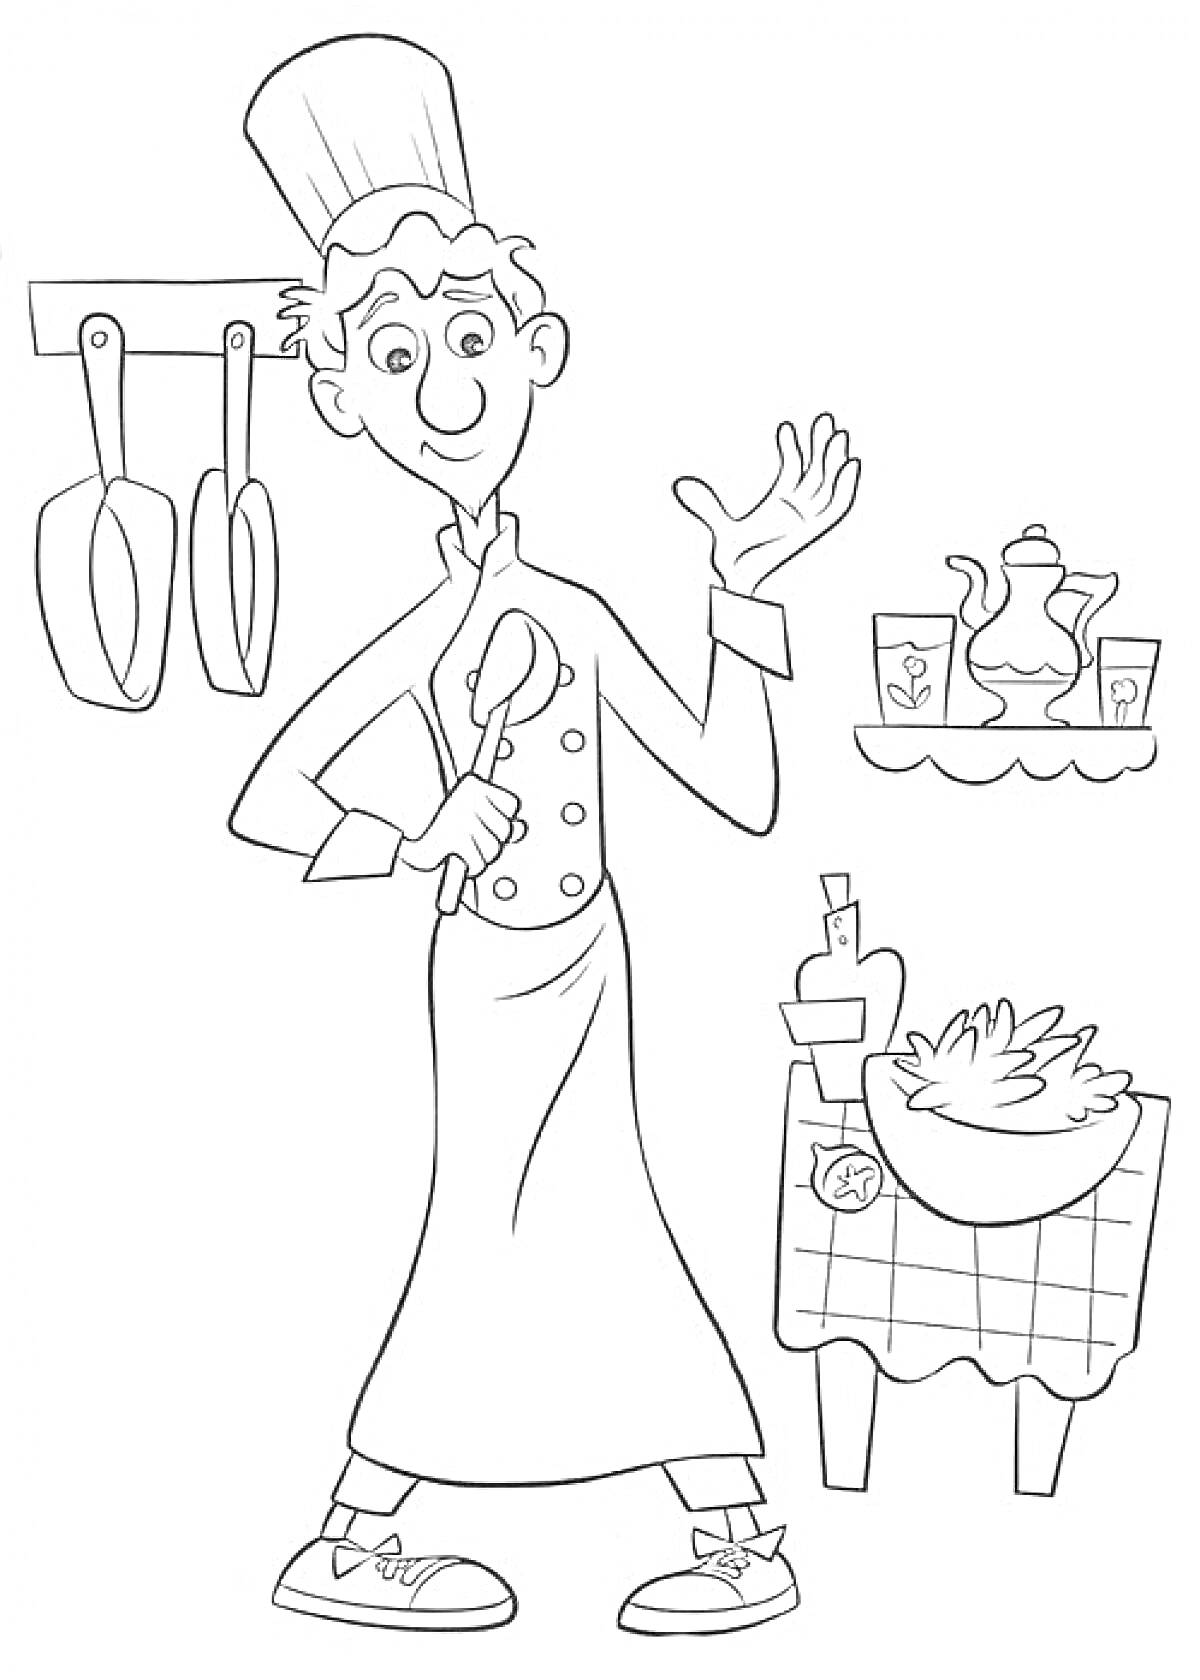 Раскраска Повар с поварешкой, стол с продуктами, висящие сковородки и полка с чайником и чашками